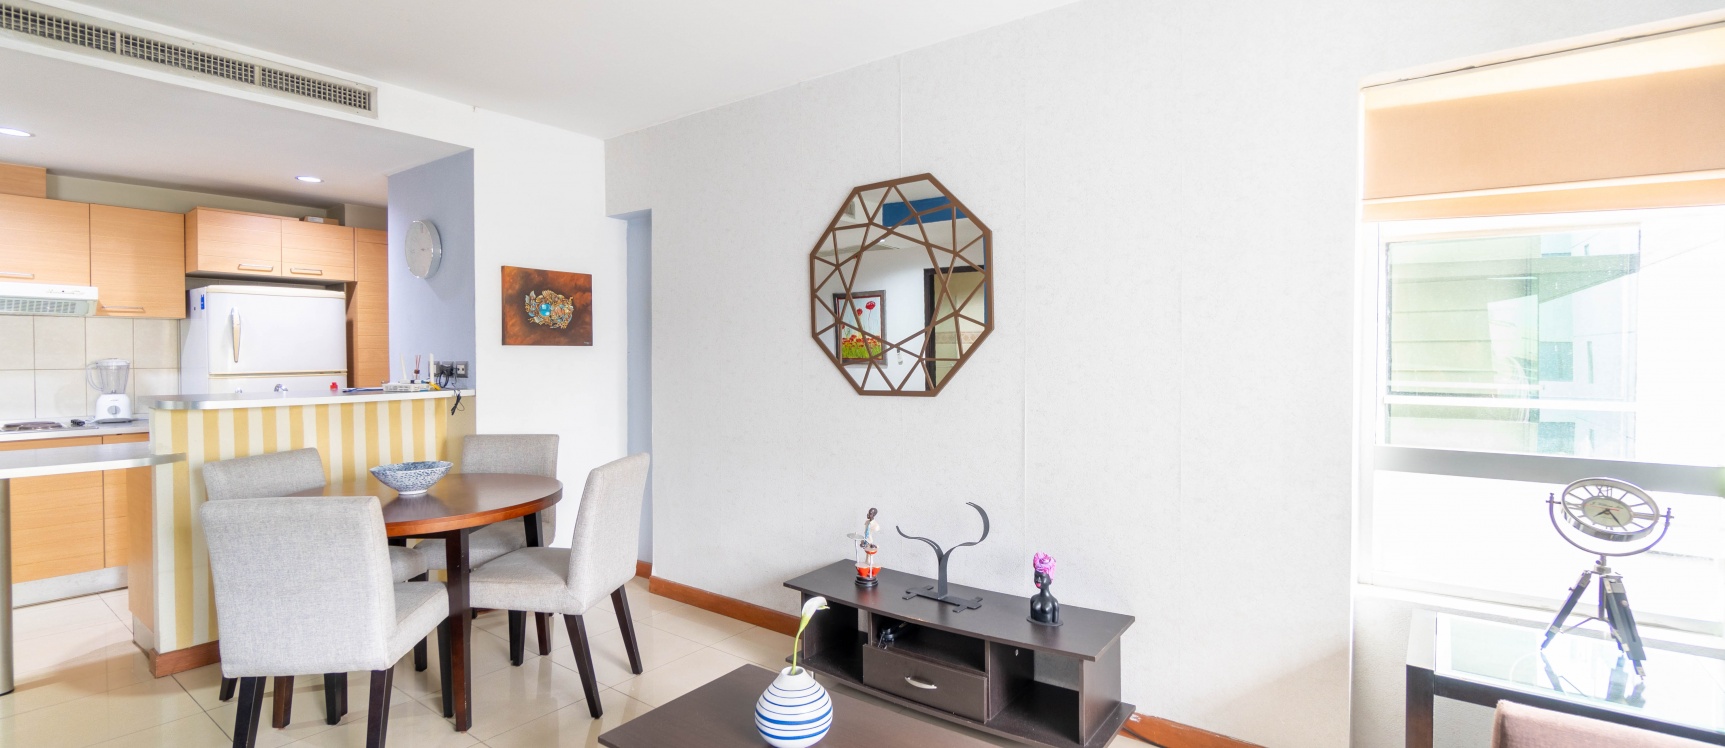 GeoBienes - Suite amoblada en venta ubicada en Torres del Sol, Norte de Guayaquil - Plusvalia Guayaquil Casas de venta y alquiler Inmobiliaria Ecuador